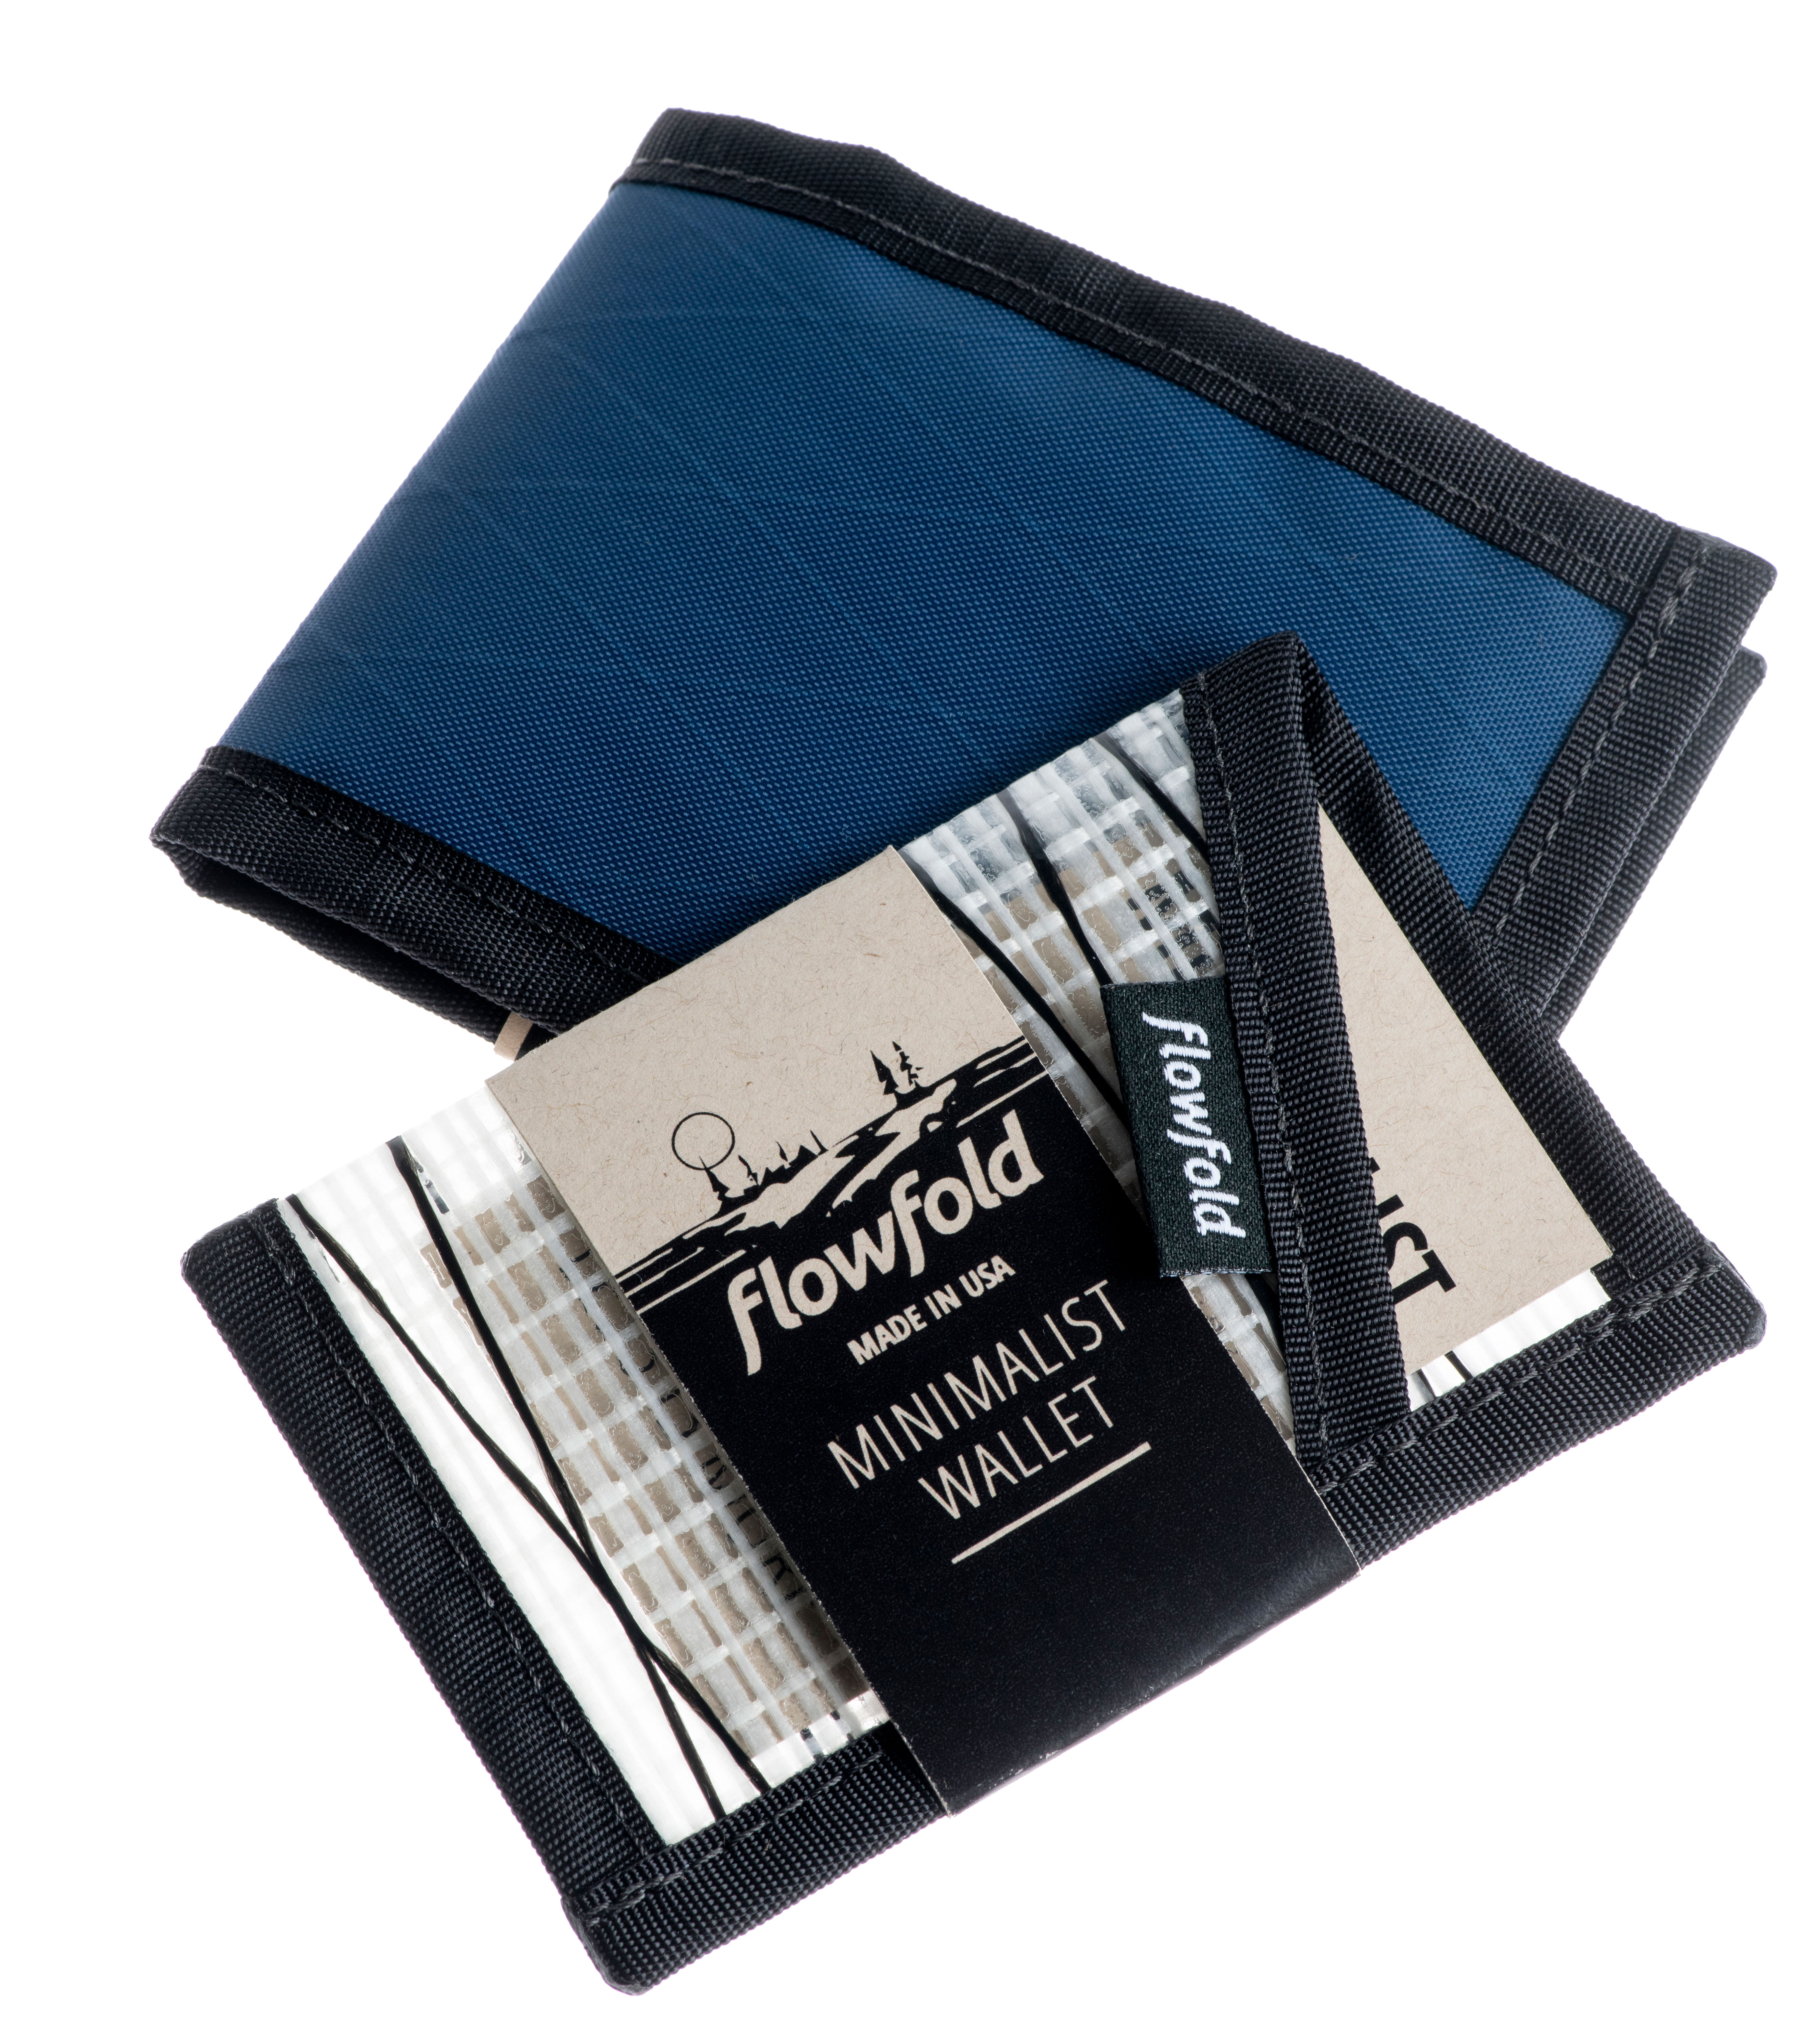 Flowfold minimalist wallet